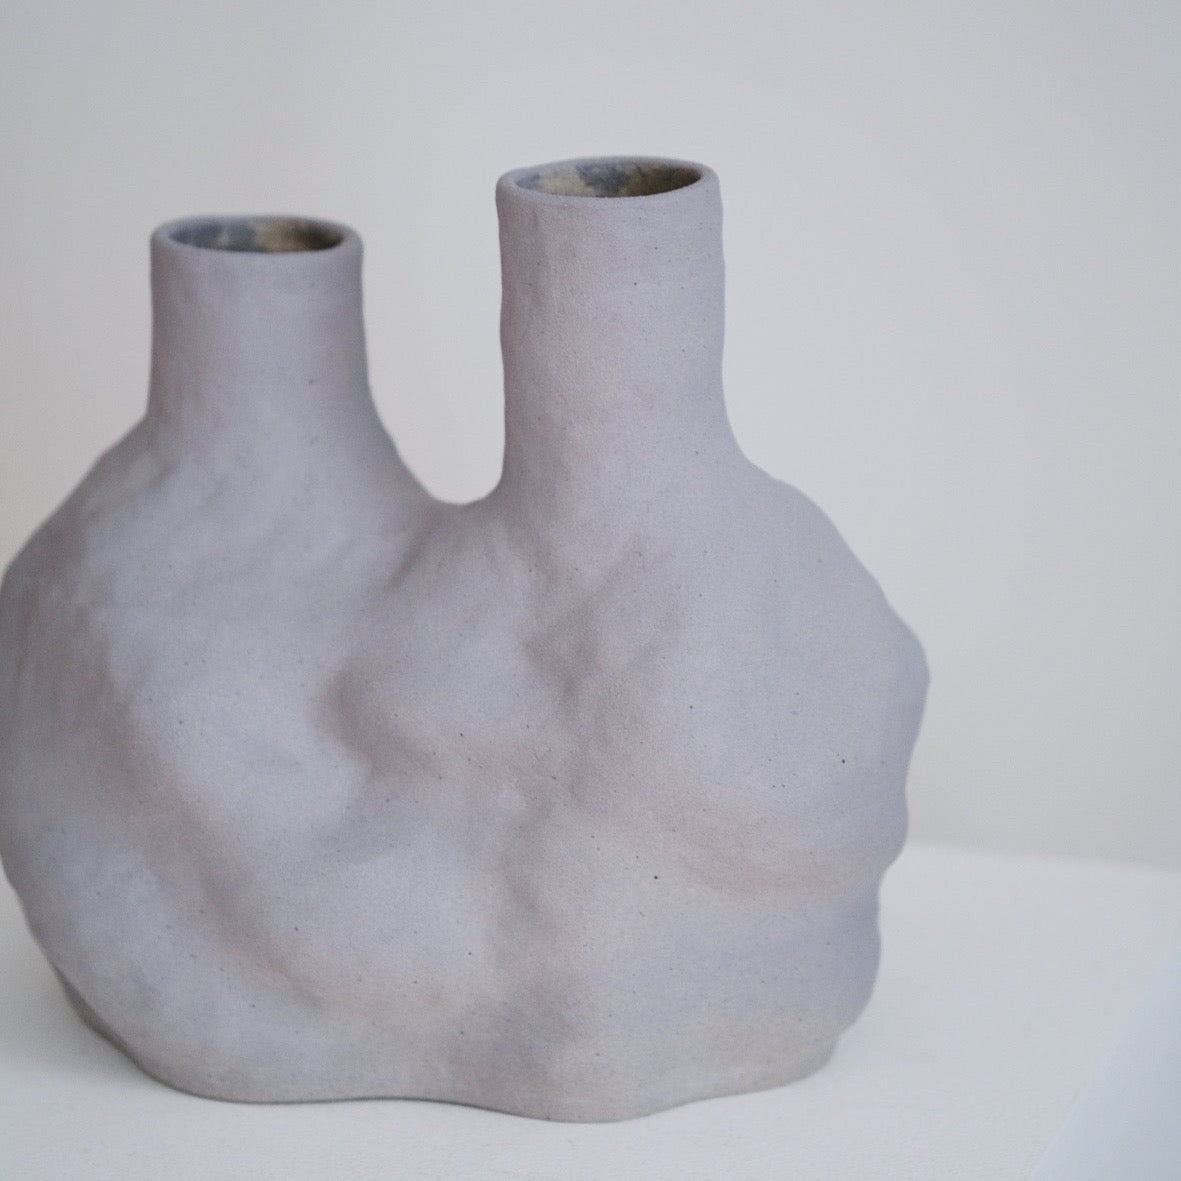 Two Necks Vase, 2021